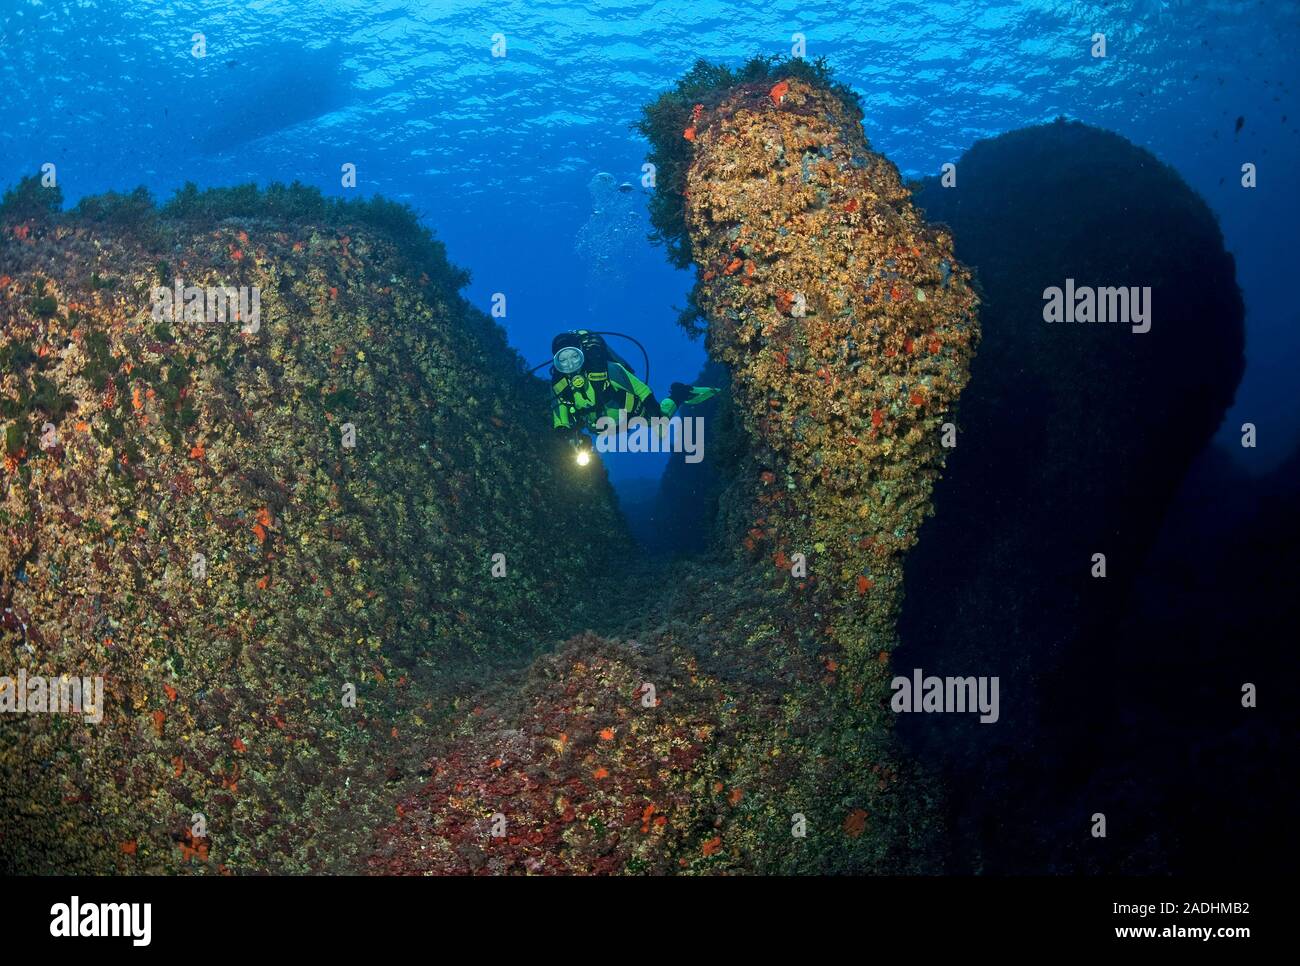 Scuba Diver à un récif rocheux colorés, réserve naturelle et marine park Dragonera, Sant Elm, Majorque, îles Baléares, Espagne Banque D'Images